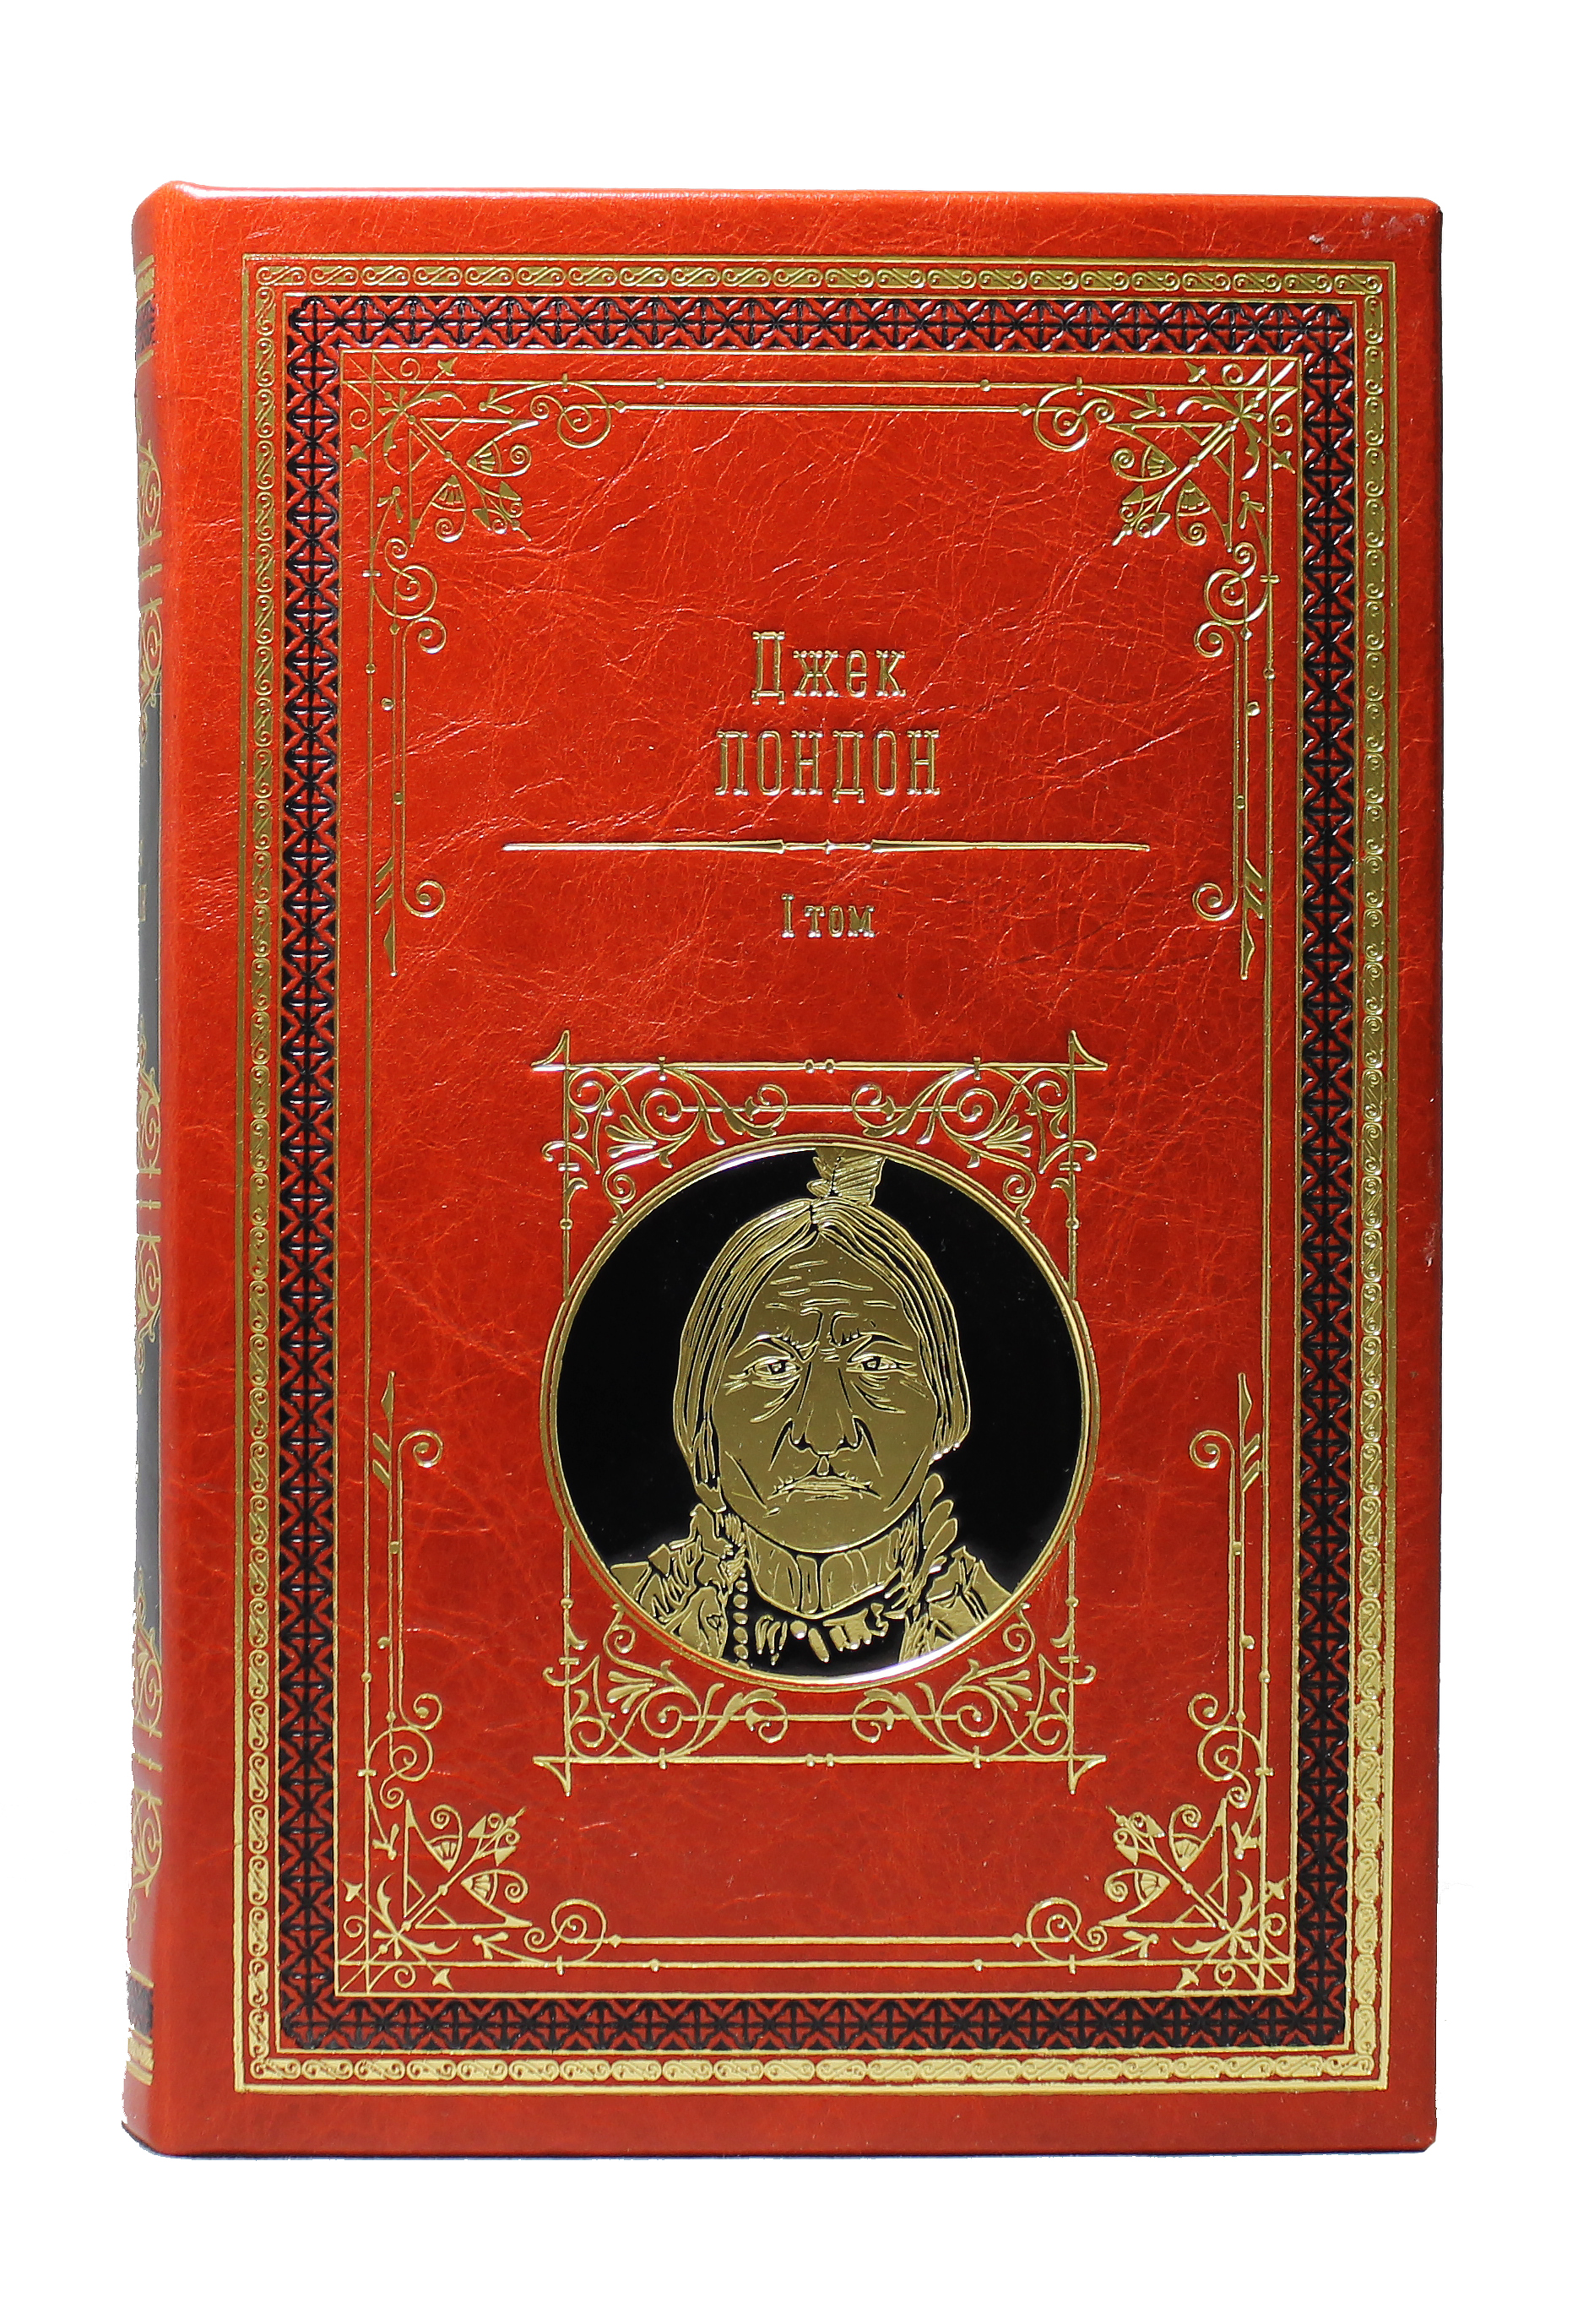 Собрание сочинений Джека Лондона в 14 томах в кожаном переплете ручной работы